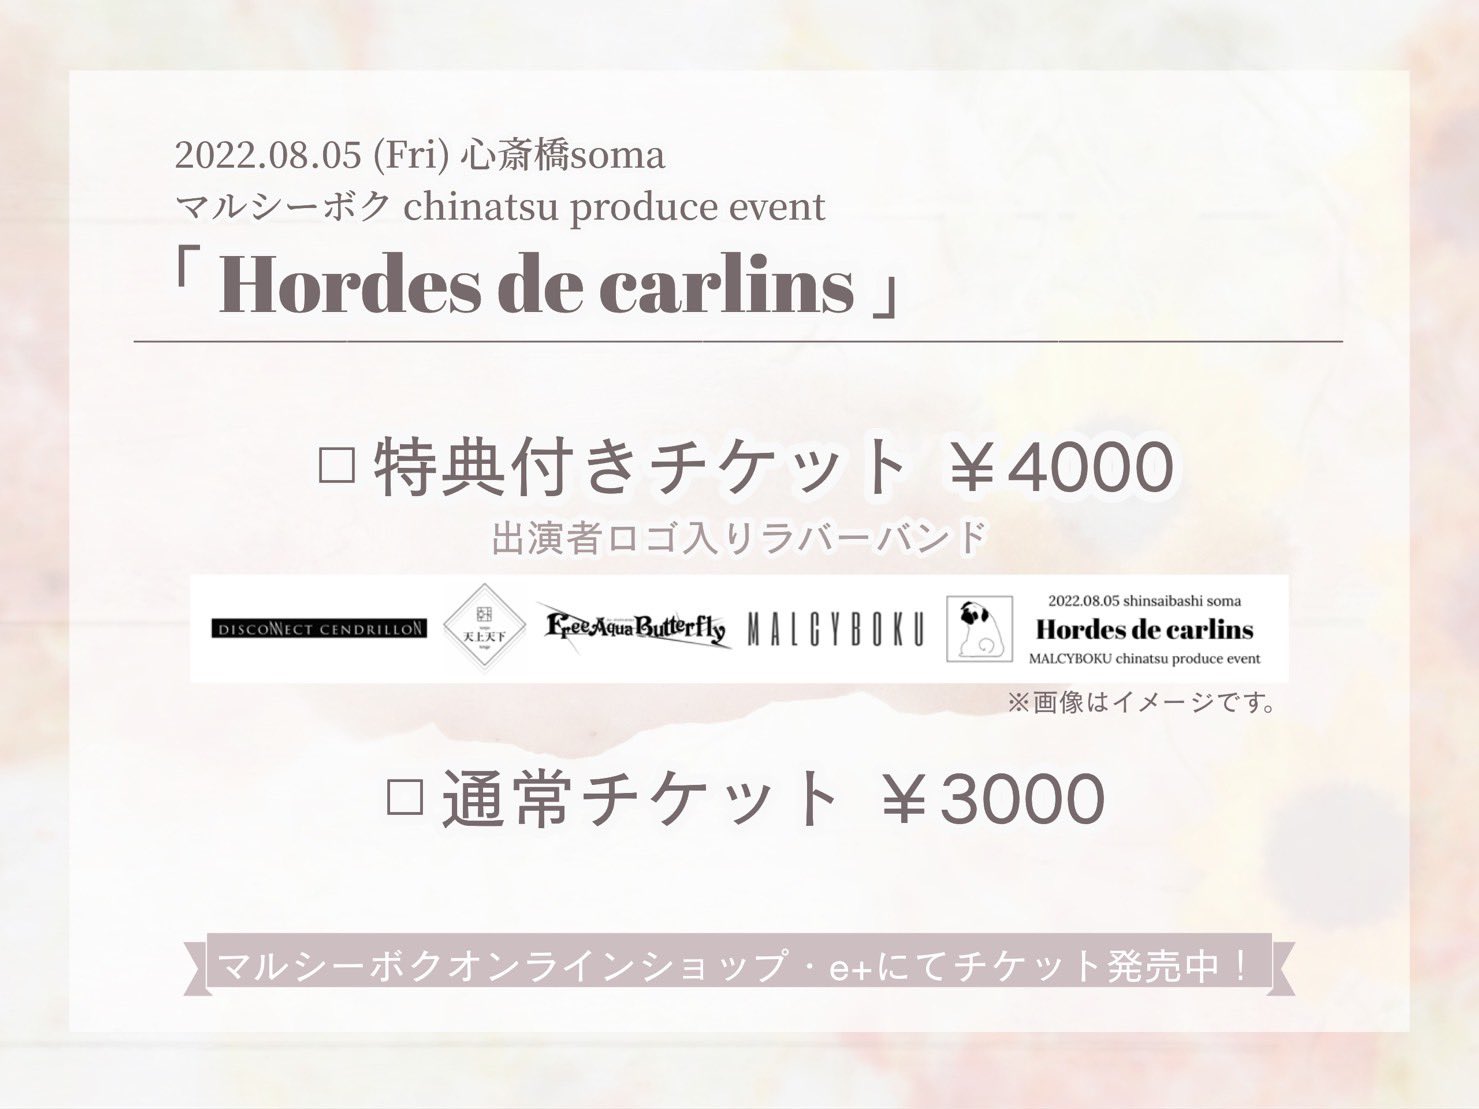 <del>マルシーボク chinatsu produce event 「Hordes de carlins」</del>